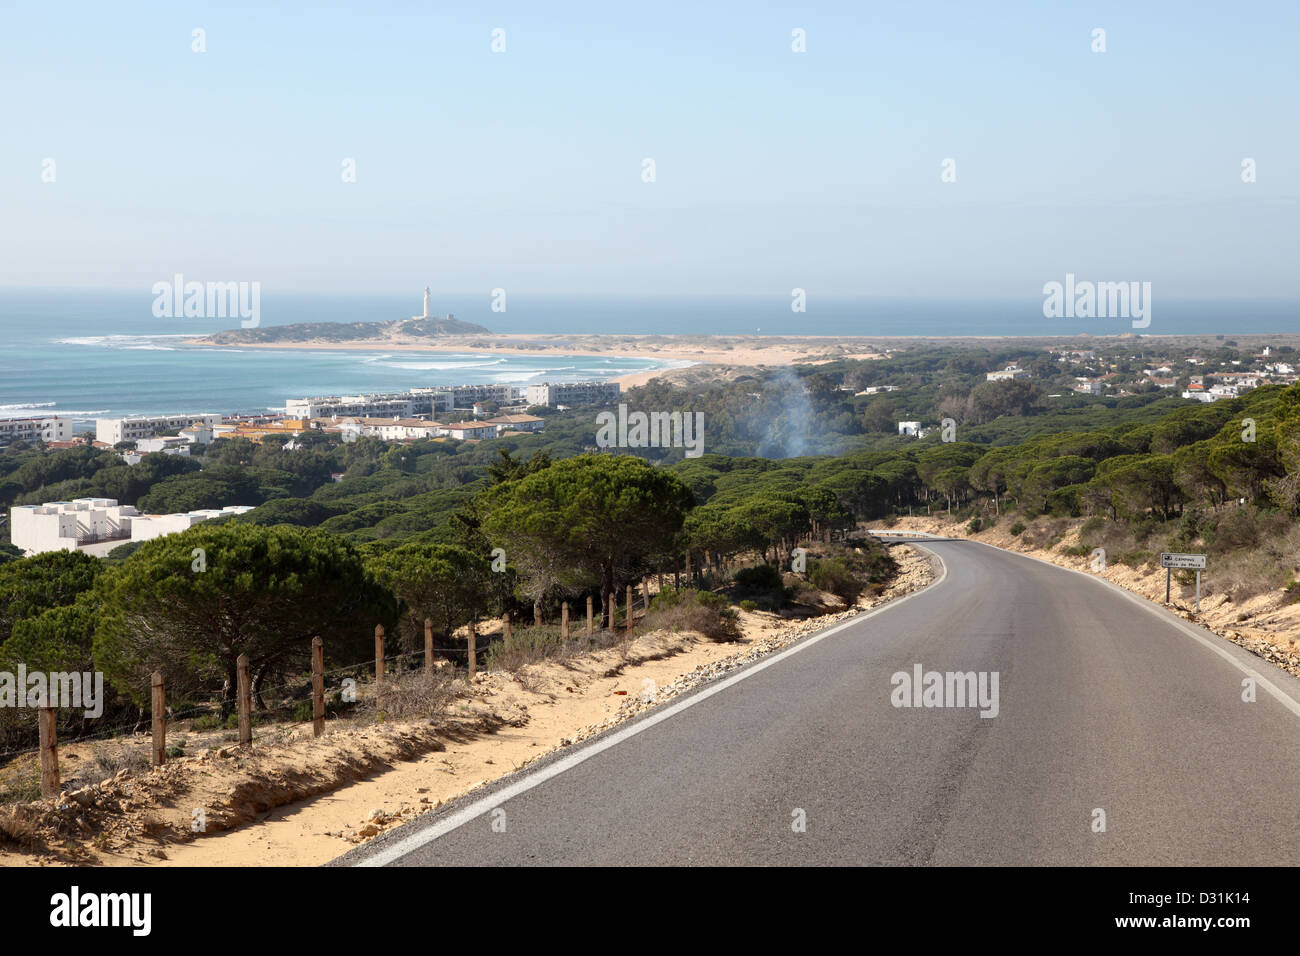 Vue sur le village et la plage El Palmar. Costa de la luz, Andalousie, Espagne Banque D'Images